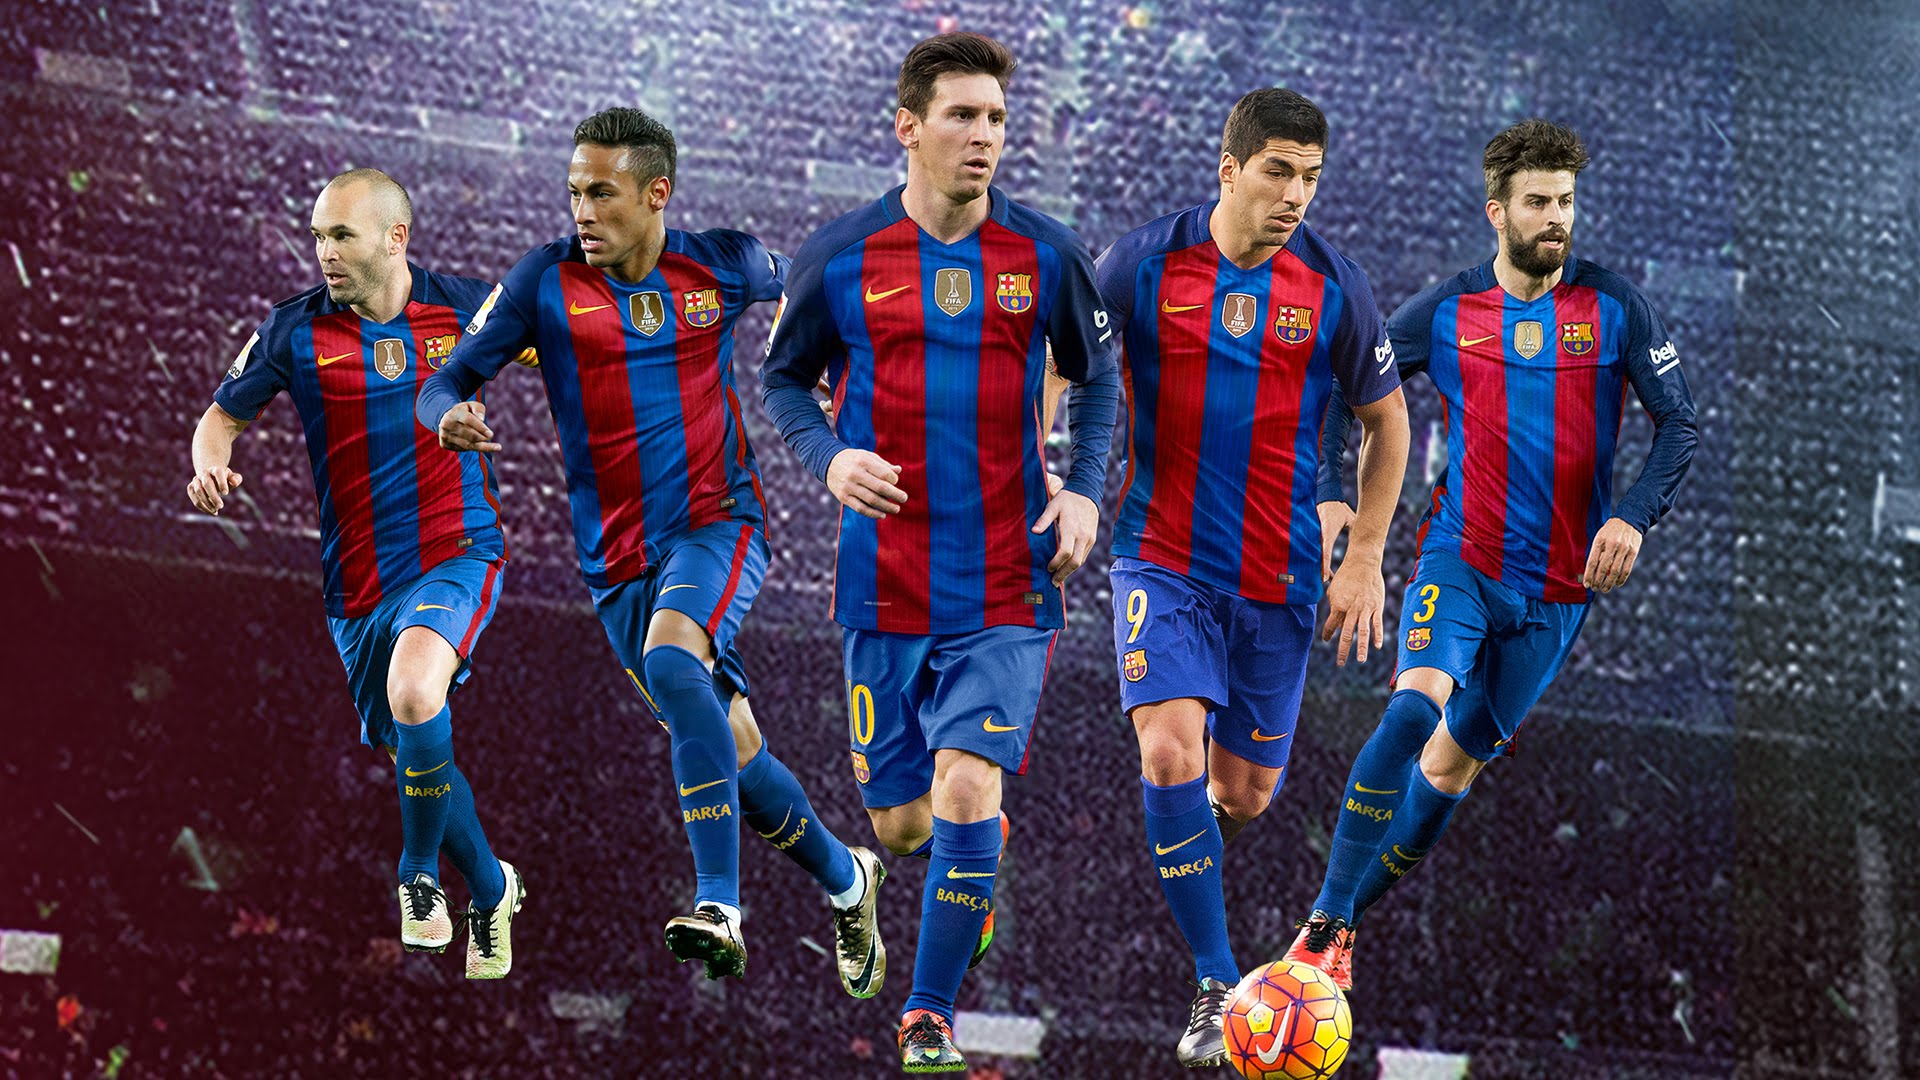 barcelona team wallpaper,soccer player,football player,team,team sport,player